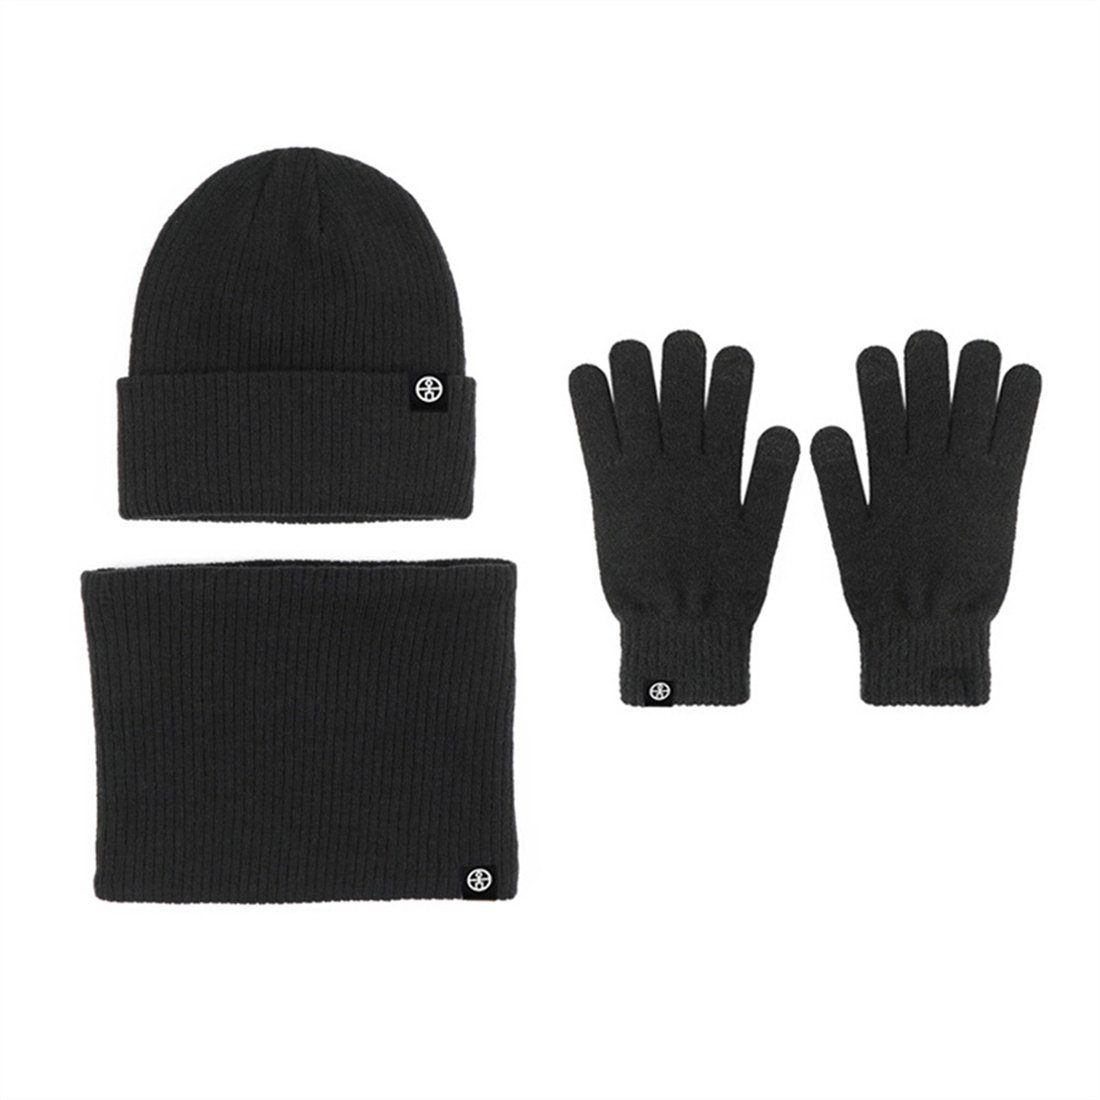 DÖRÖY Strickmütze Unisex Winter Warmth 3 Piece Set, Strickmütze + Schal + Handschuhe Schwarz